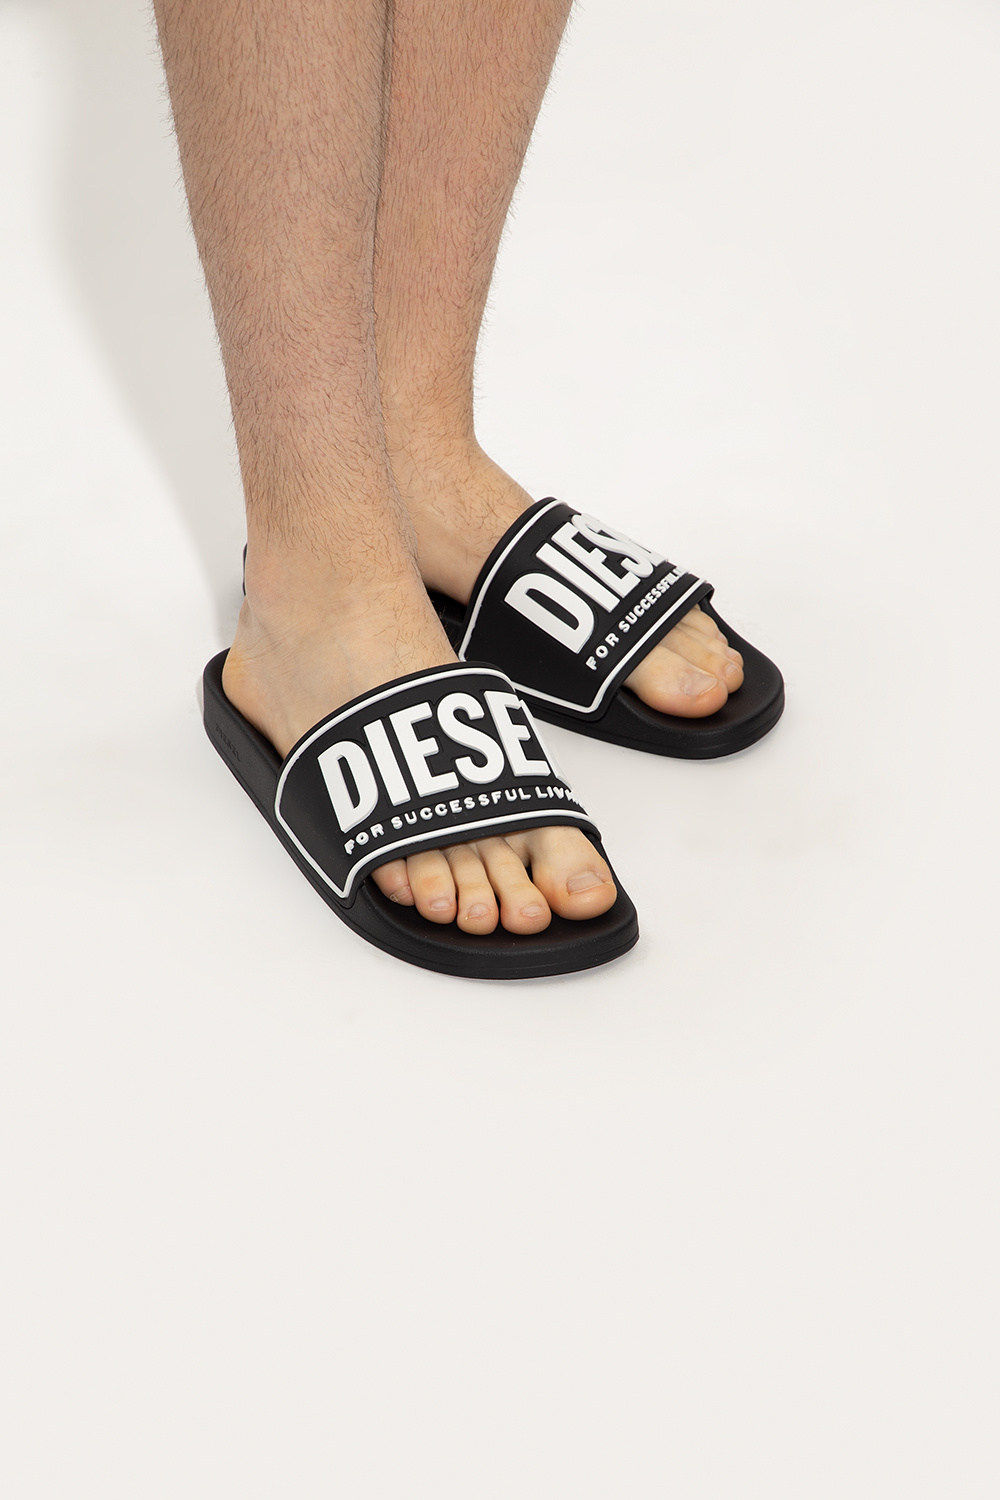 Diesel 'Sa-Mayemi' rubber slides | Men's Shoes | Vitkac